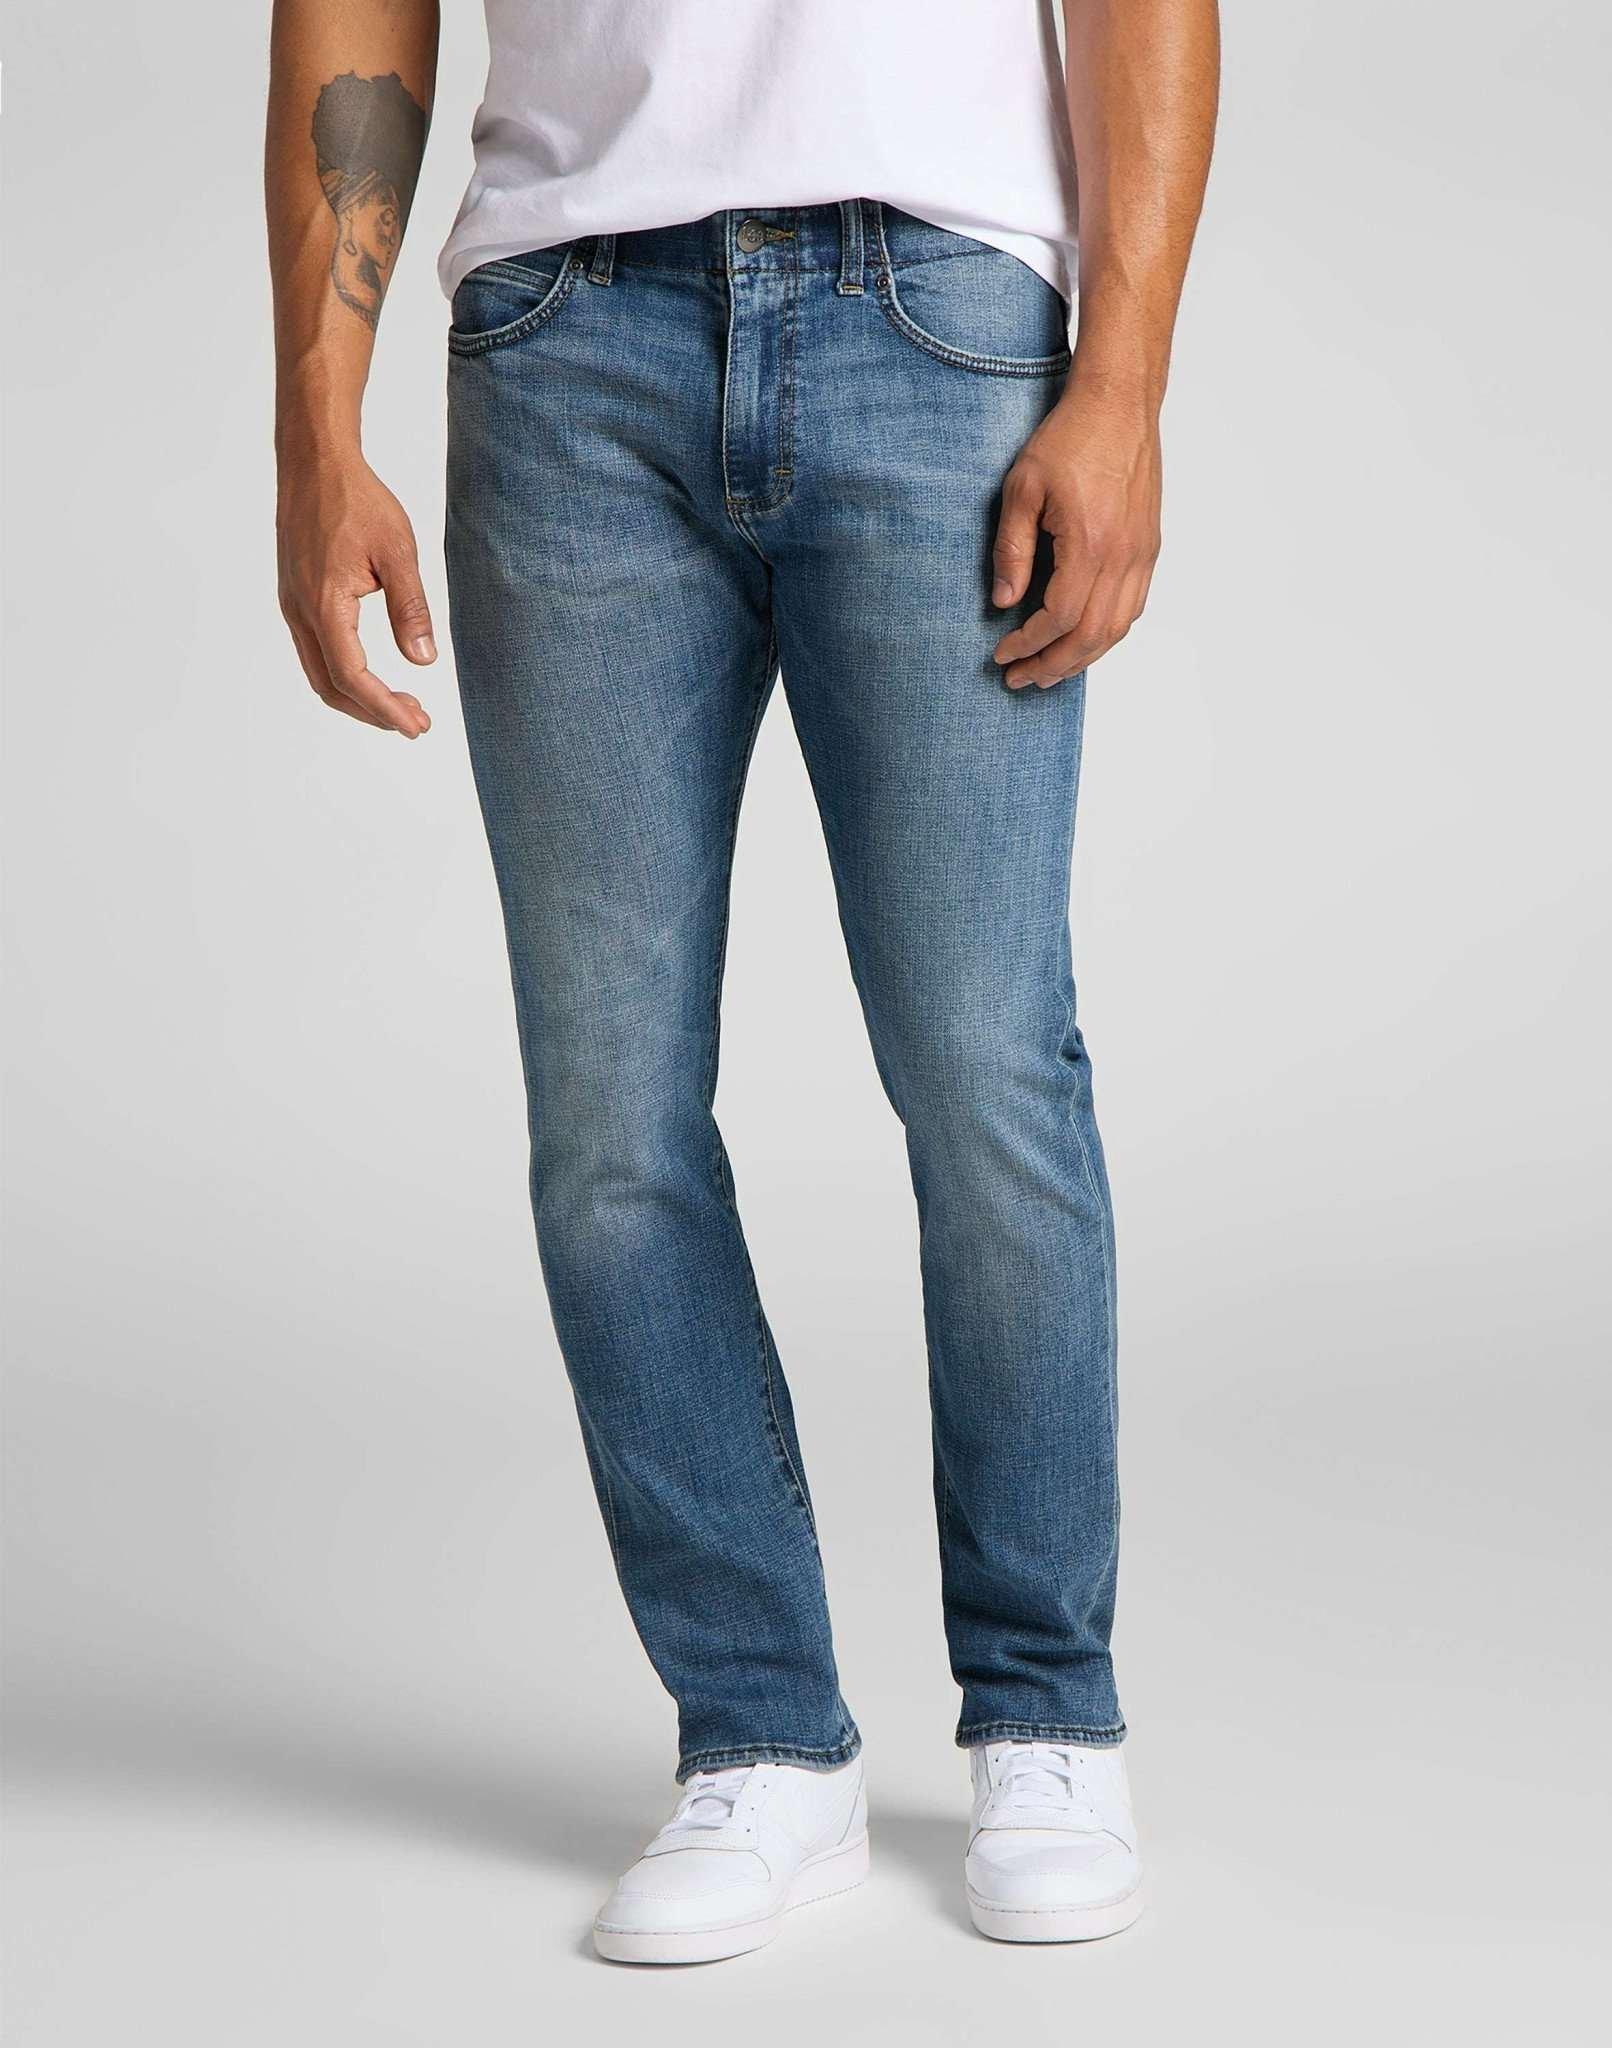 Jeans Slim Fit Mvp Herren Blau Denim L30/W31 von Lee